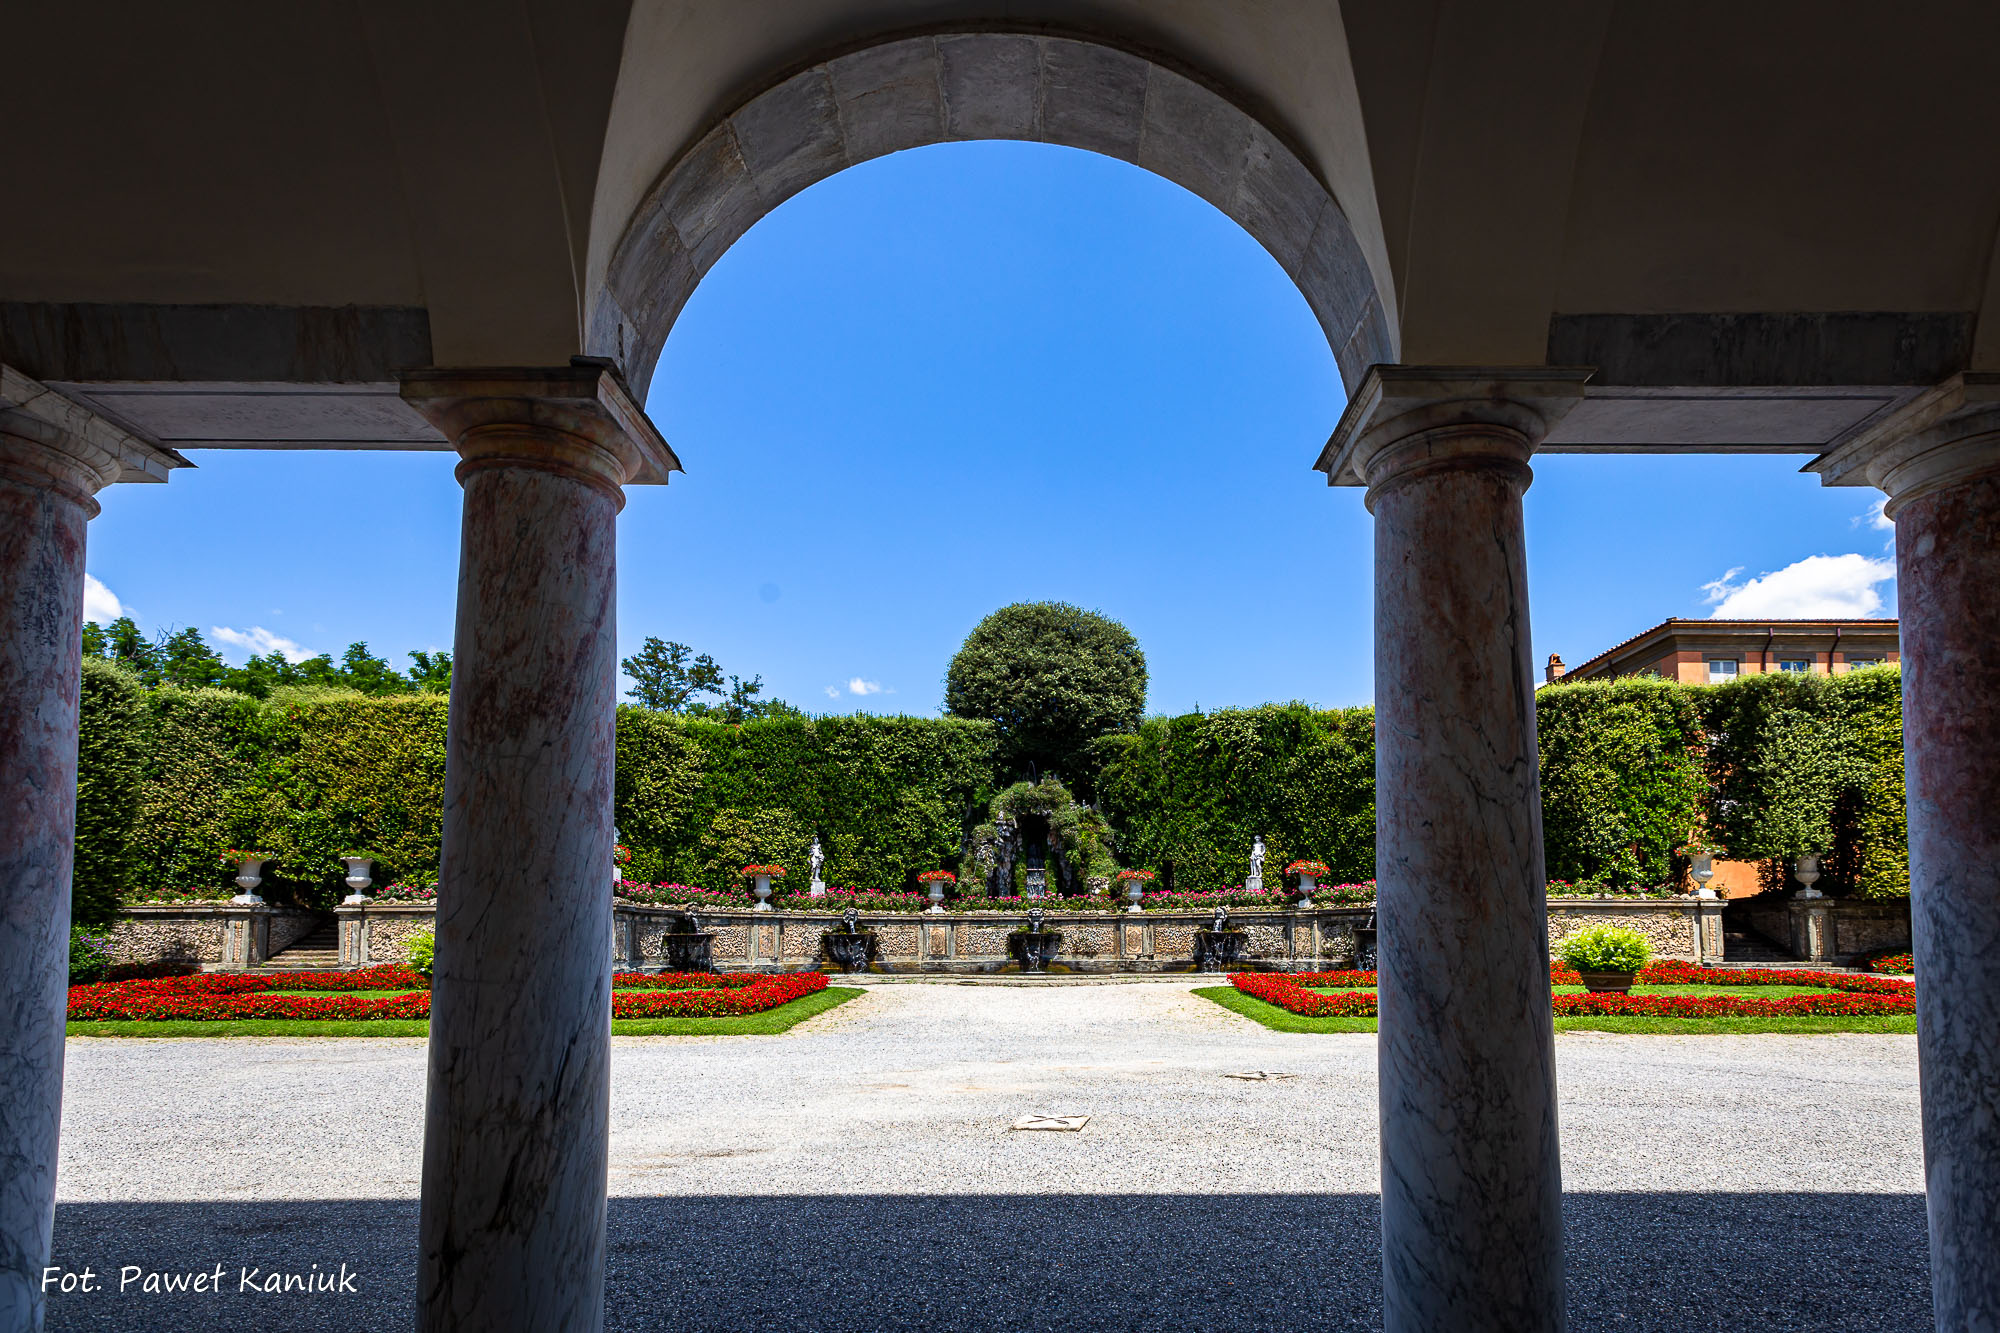 Wakacje w Toskanii 2019 – dzień 2 – Villa Reale i Montecarlo